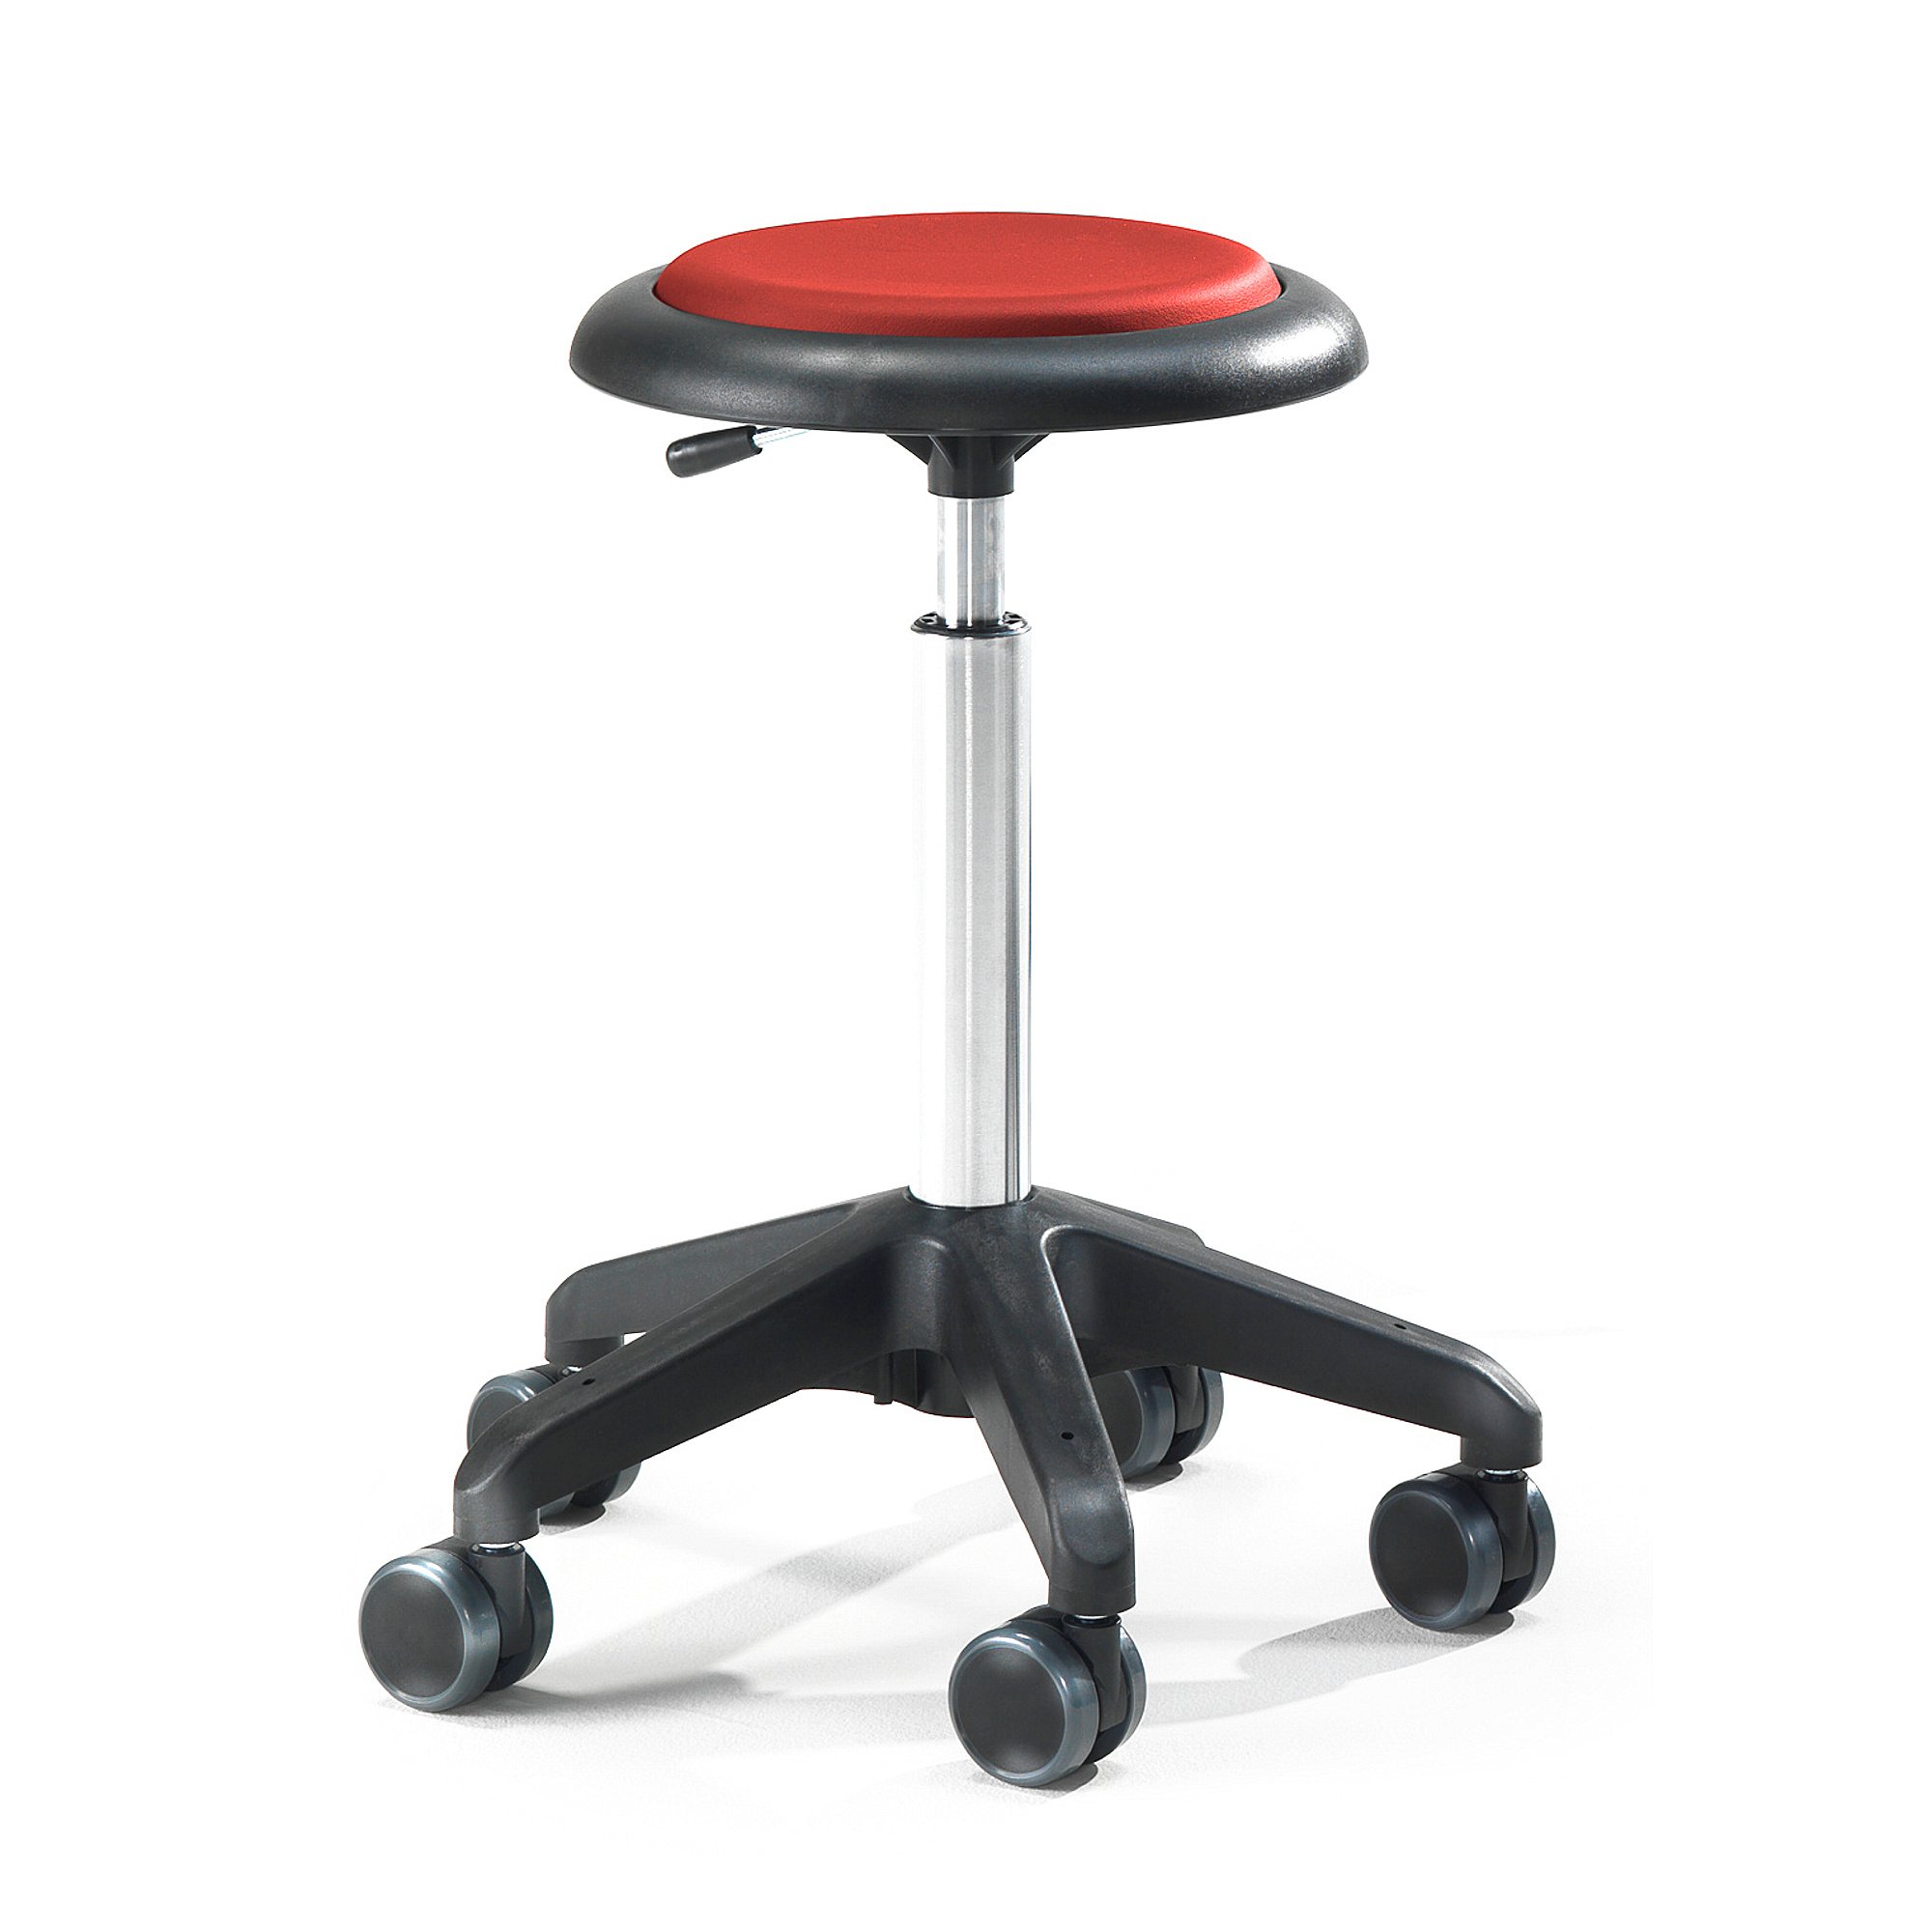 Pracovní stolička DIEGO, výška 540-730 mm, umělá kůže, červená